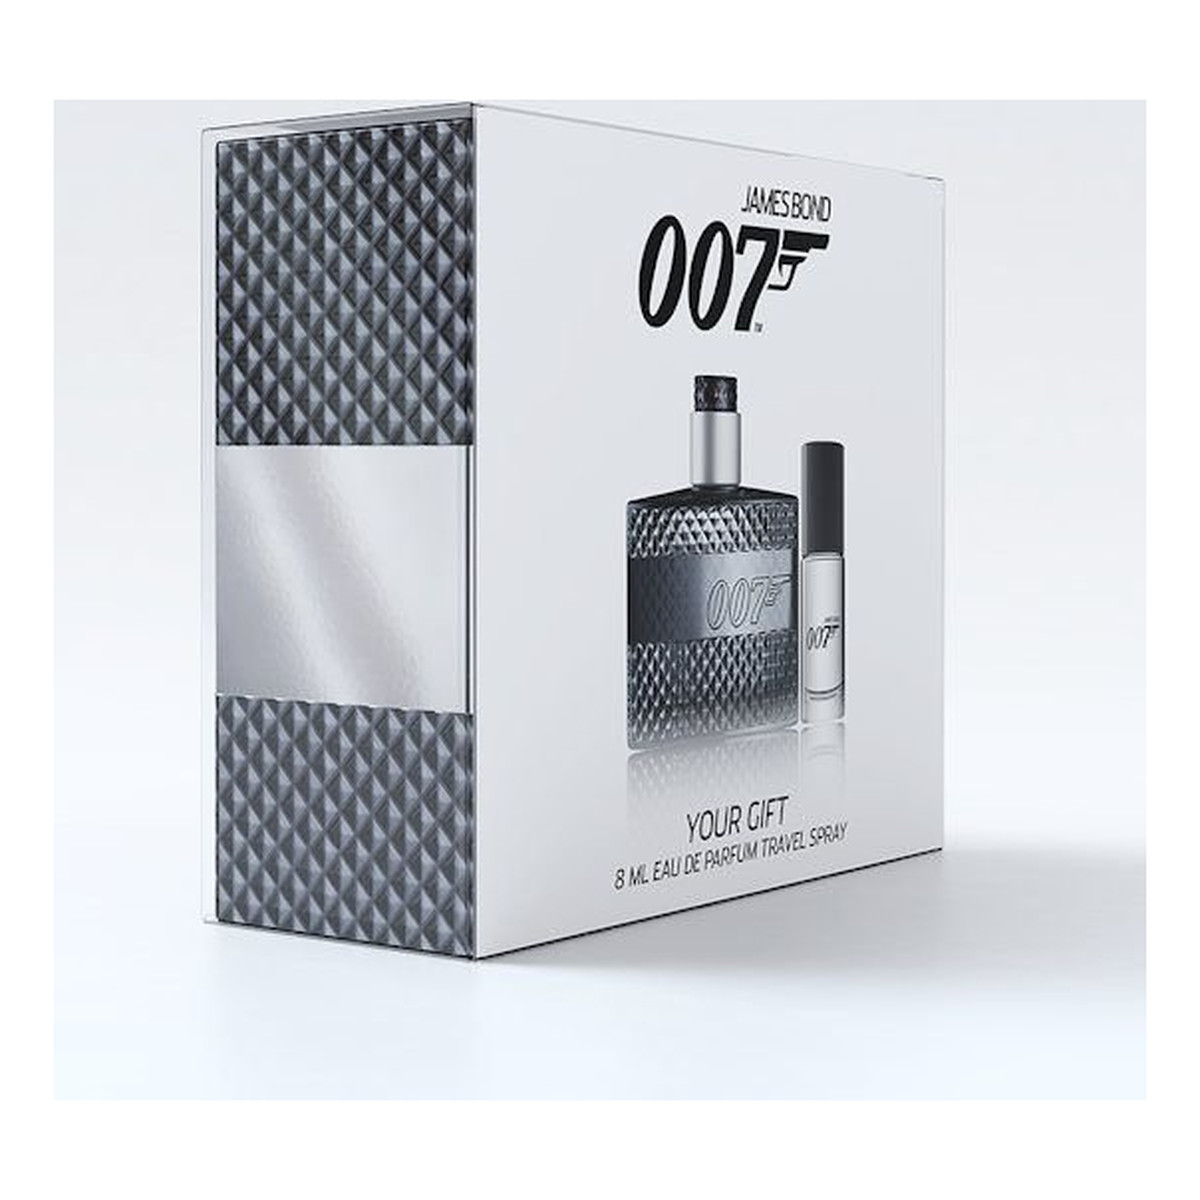 James Bond 007 zestaw prezentowy woda toaletowa 50ml + woda toaletowa 8ml